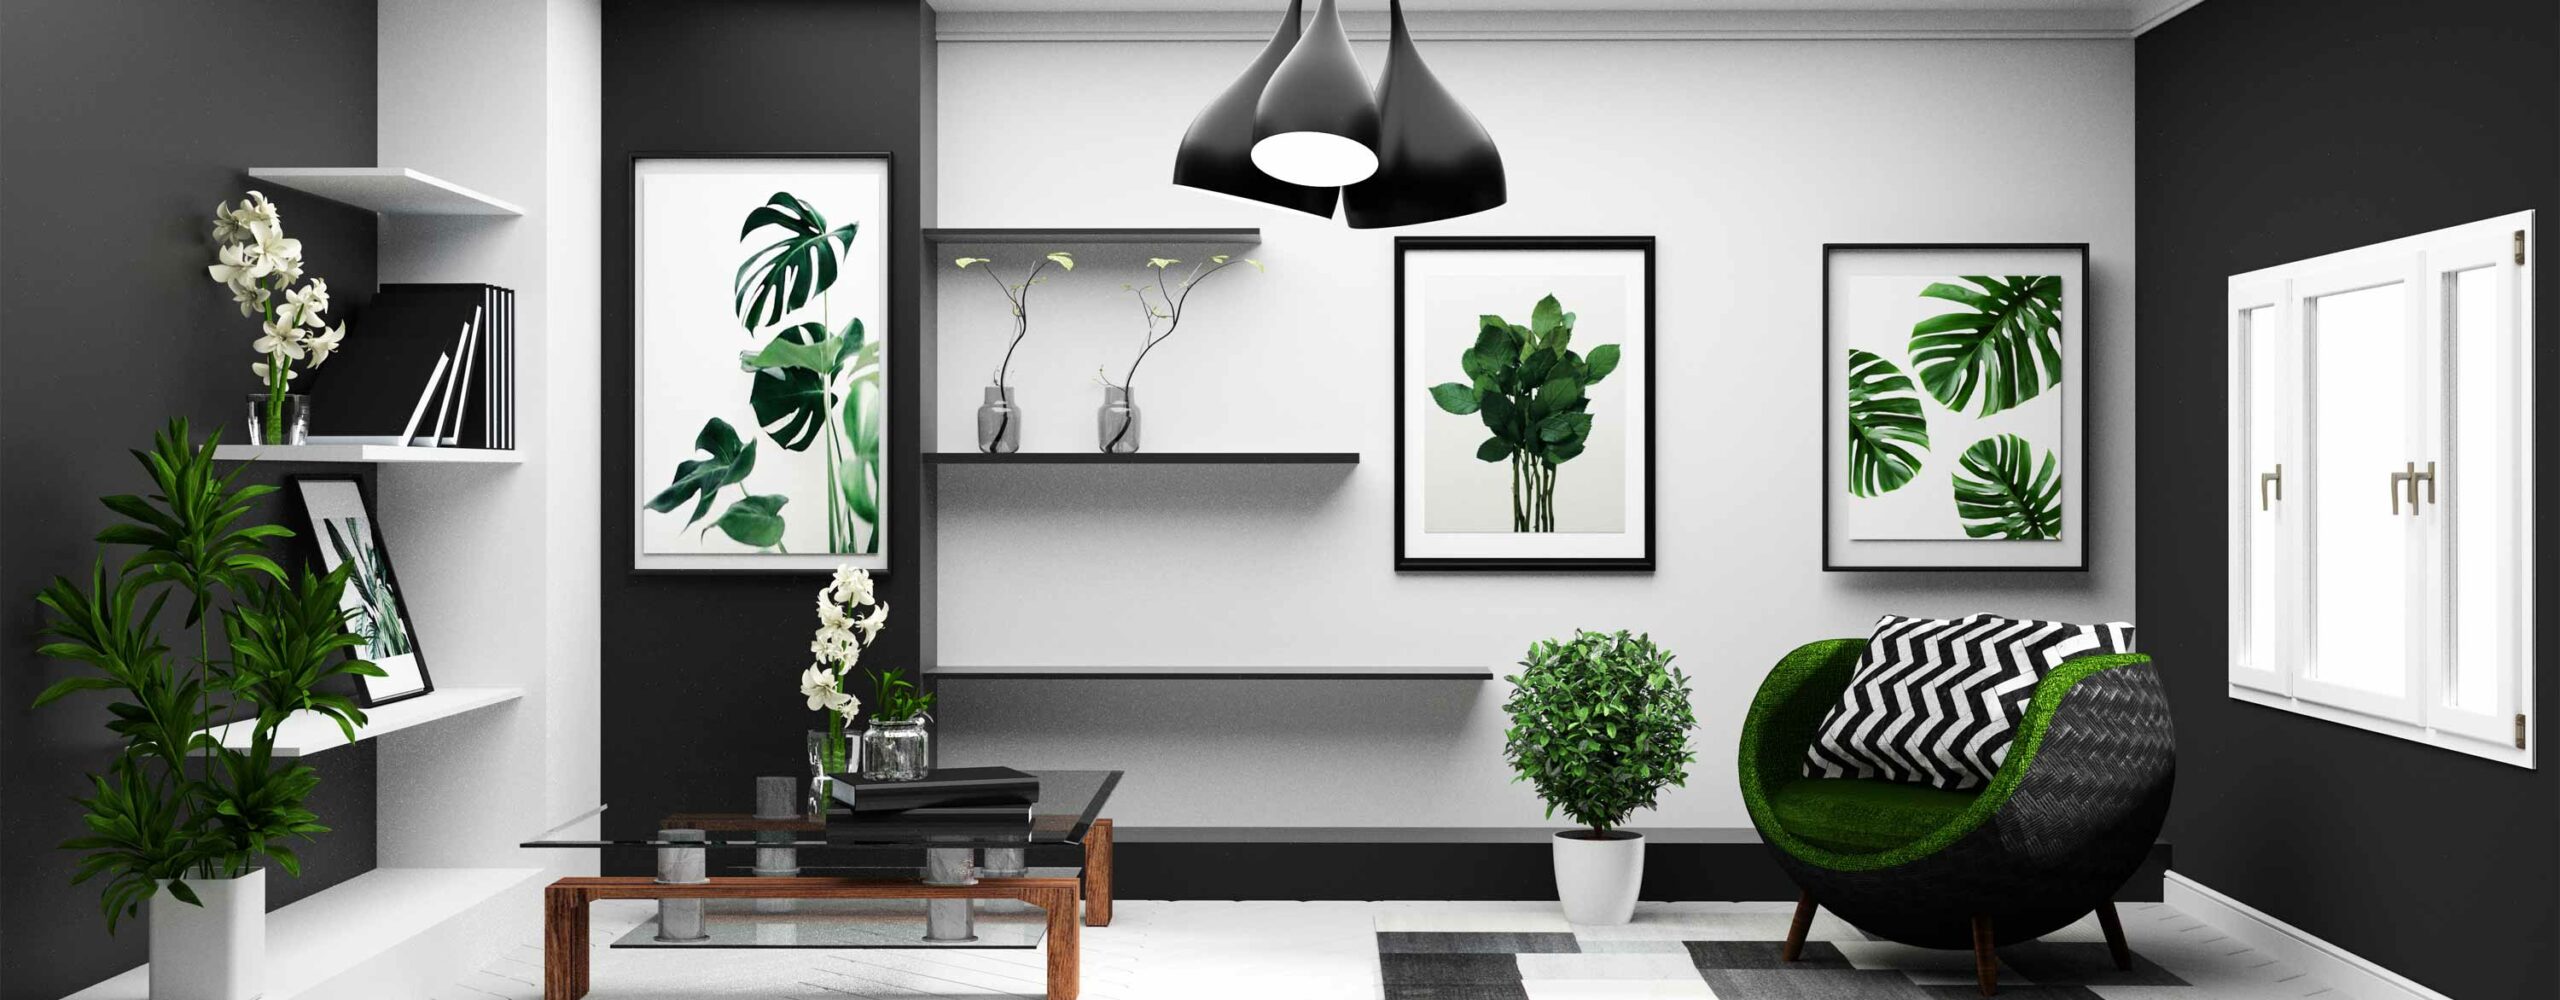 wohnraum im schwarzweiß design minimalistisches interior grüne pflanzen schwarze deckenlampe kissen mit chevronmuster auf sessel